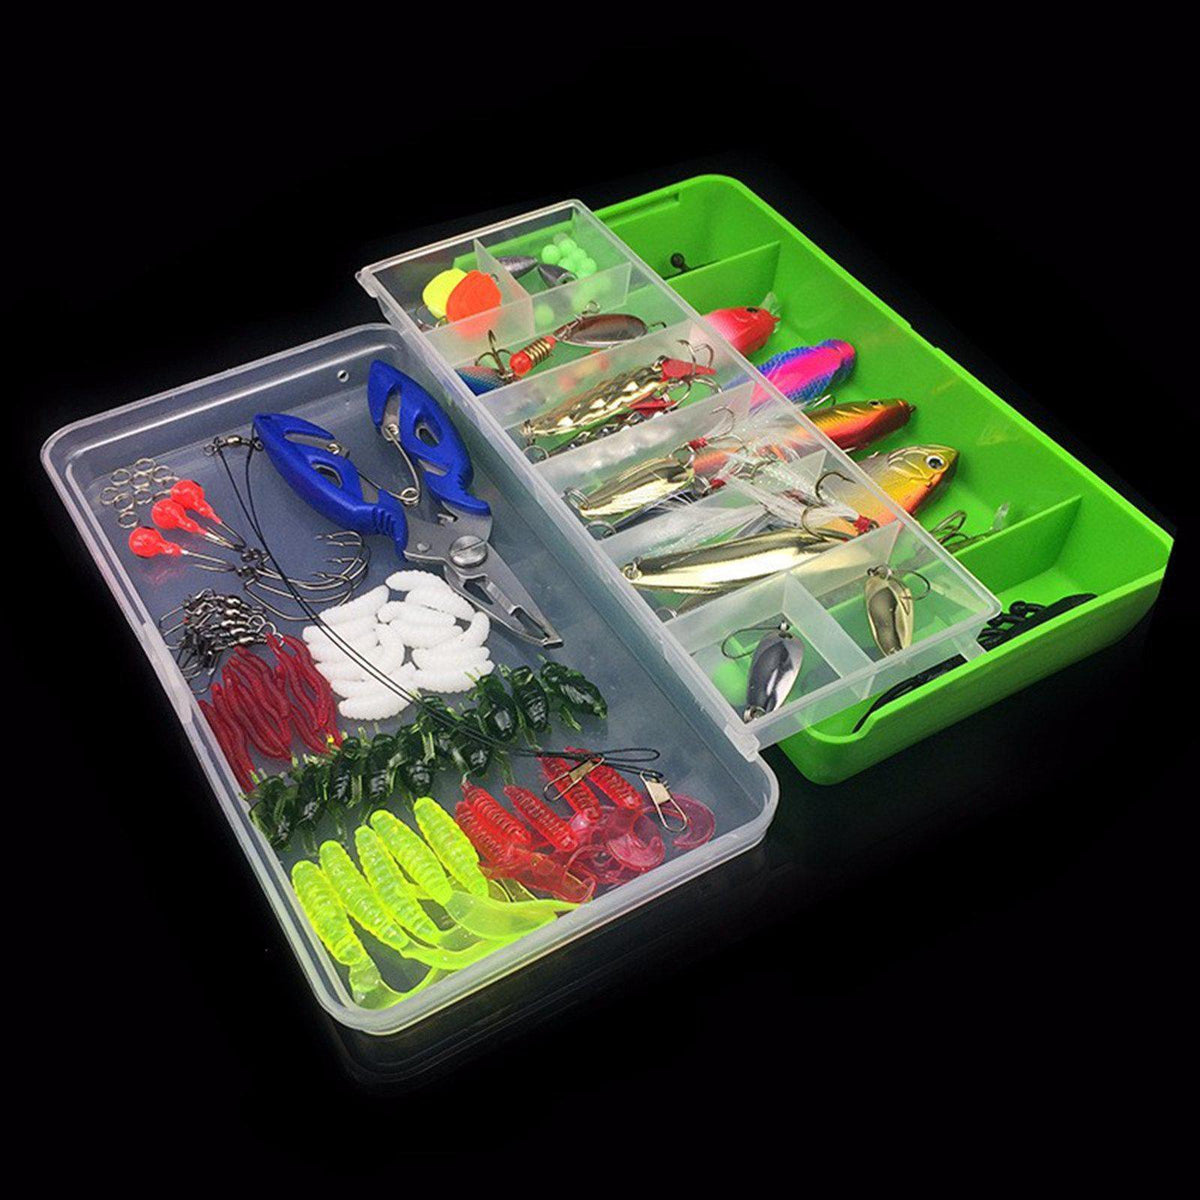 100Pcs Tackle Box Kit - Hard/Soft - Bait/Lure Fishhooks & Tools for Sa –  Kayak Shops